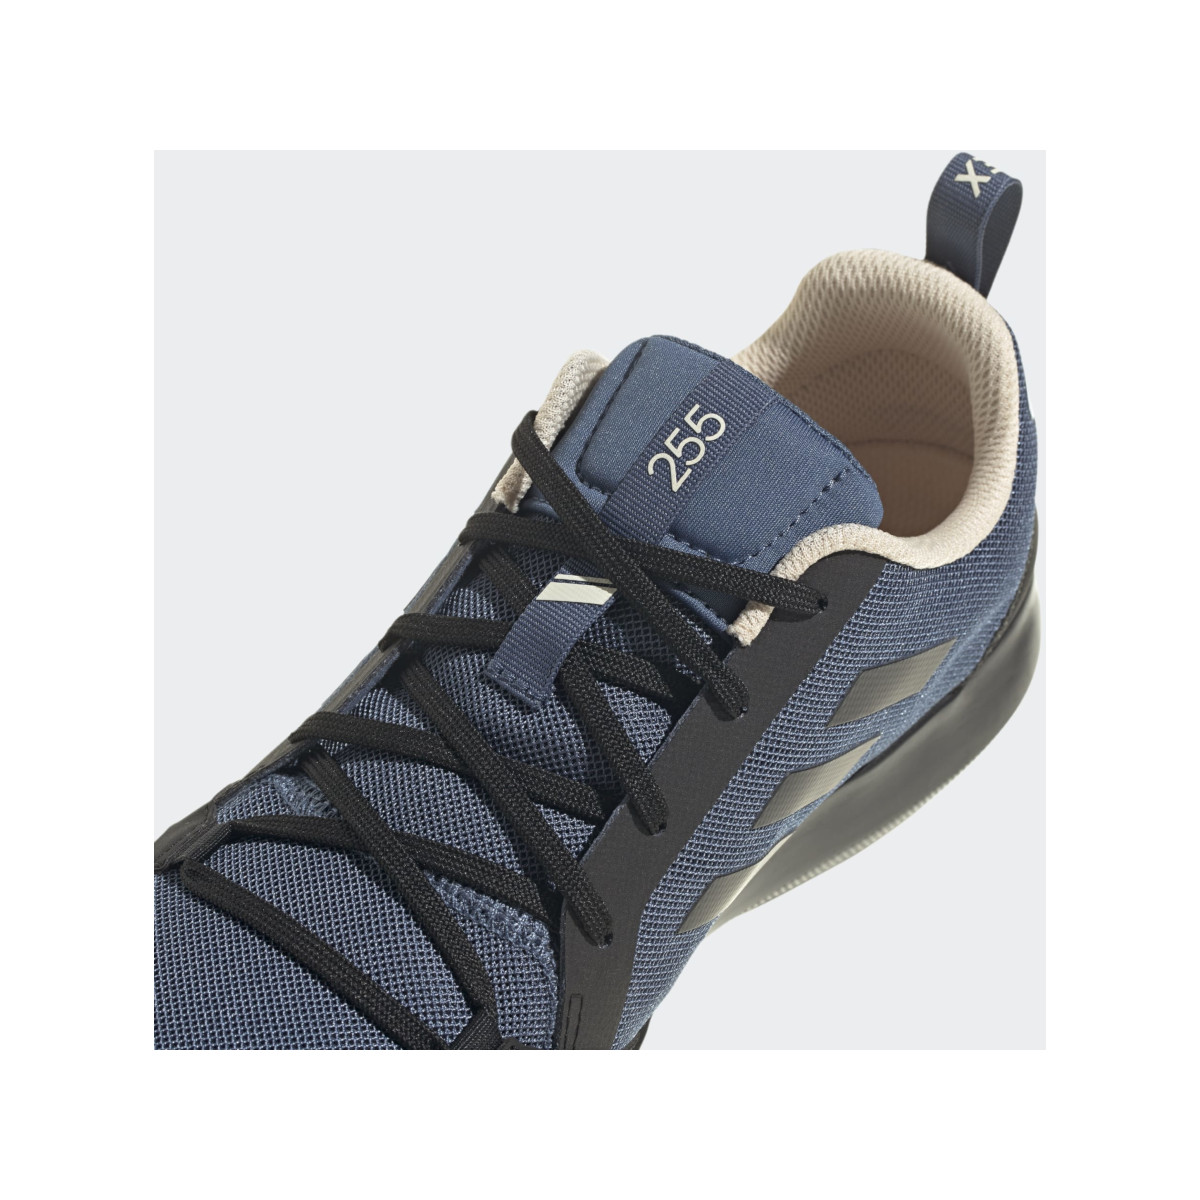 Adidas Boot Lace bootschoen heren zwart-blauw, maat 42 2/3